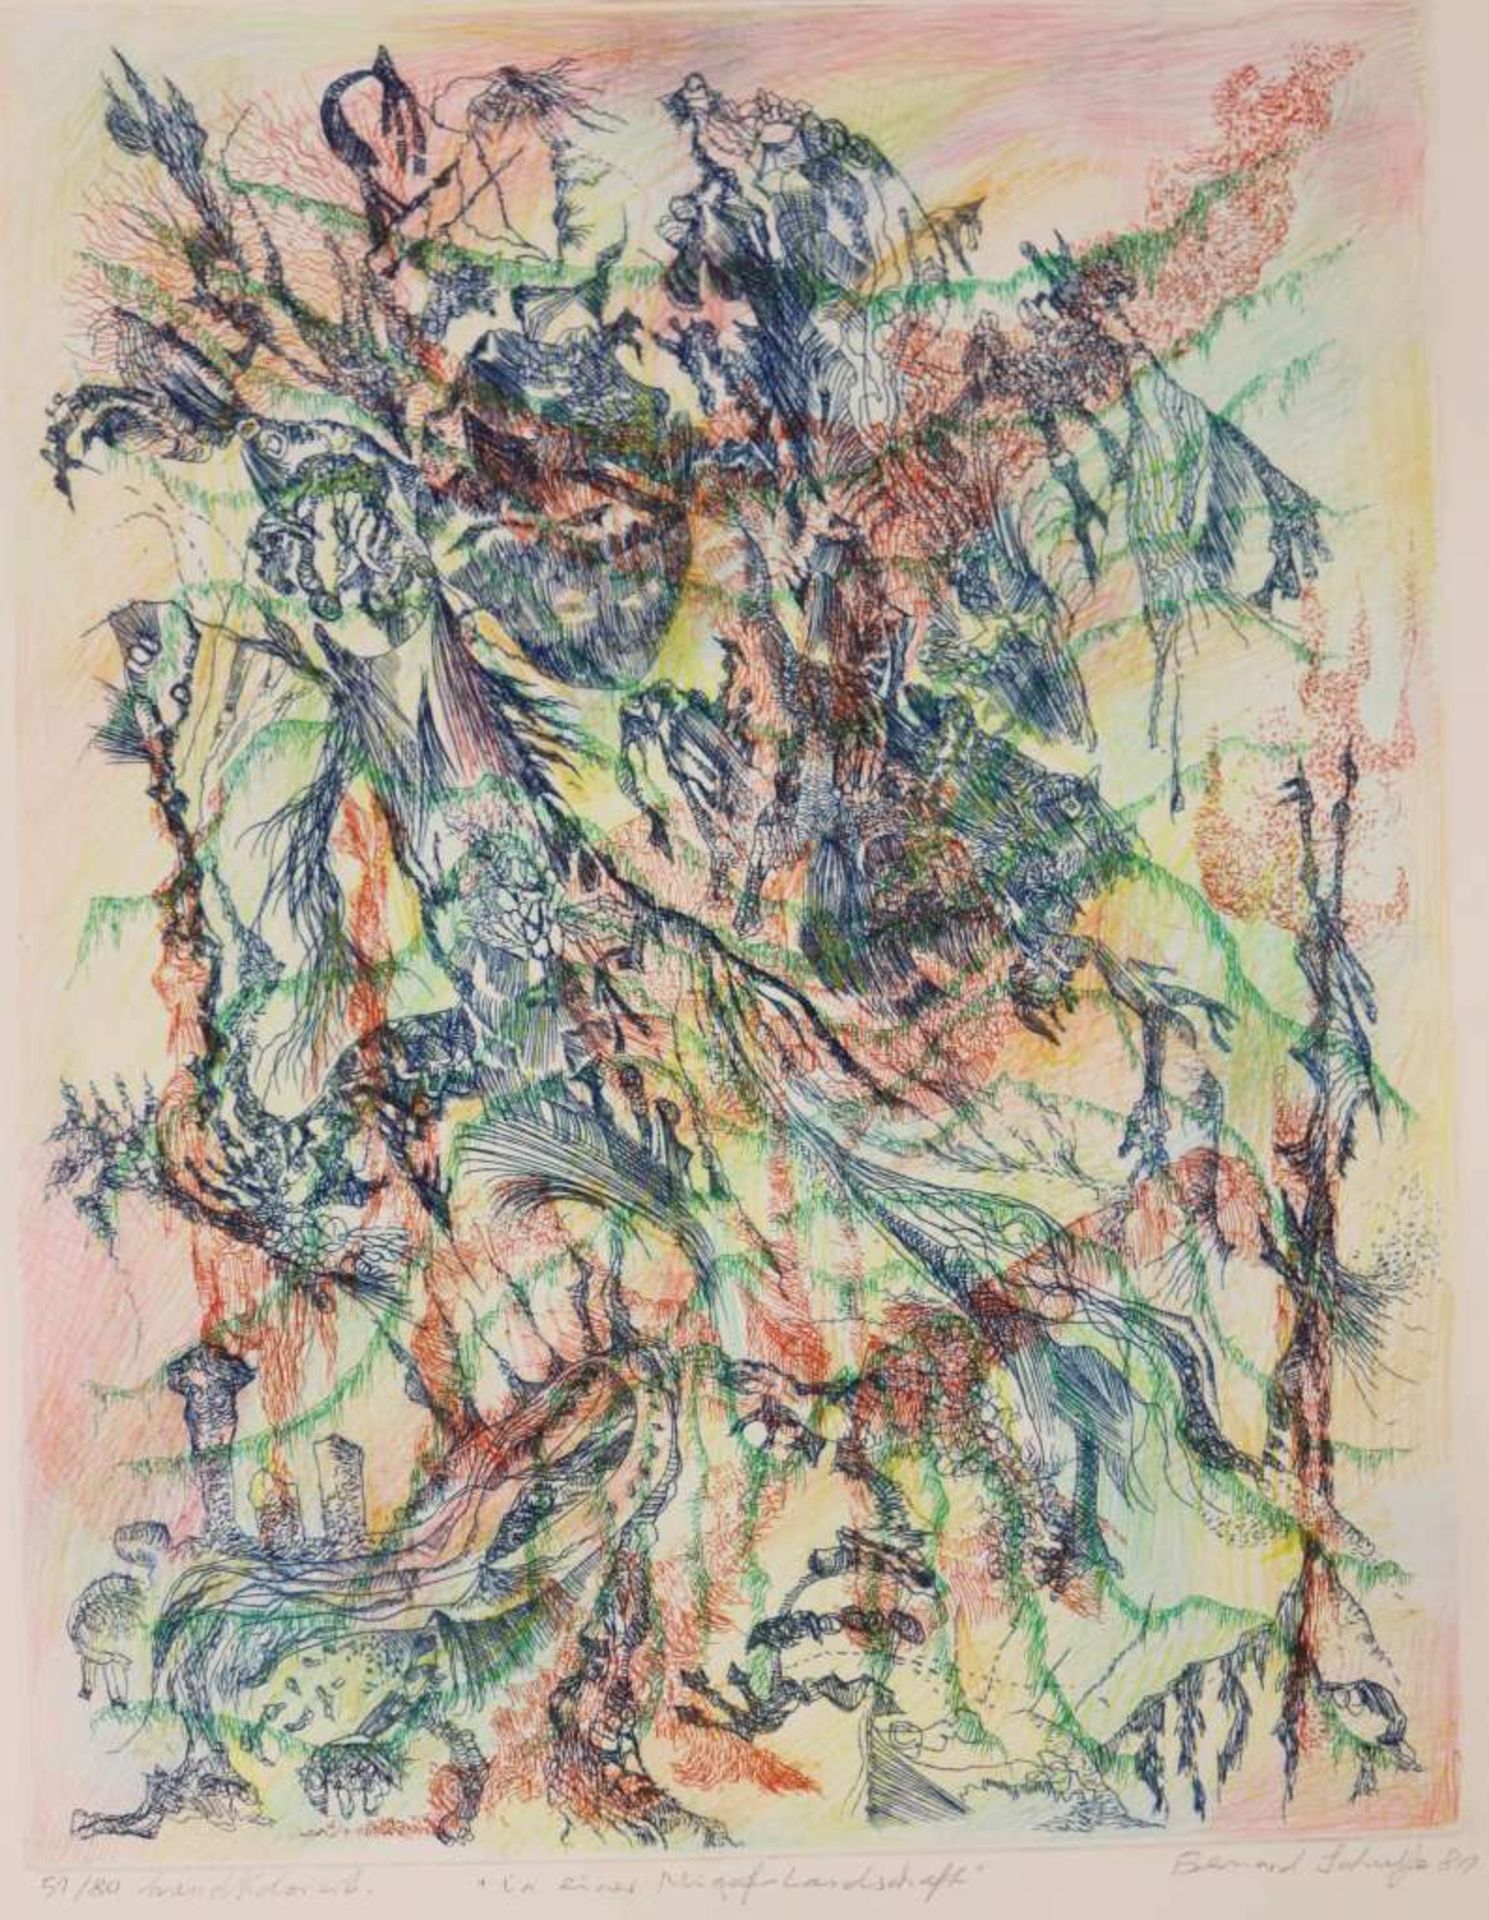 Bernard SCHULTZE (1915-2005), "In einer Migof-Landschaft", 1981, Radierung (hand coloured). Fra - Bild 2 aus 4